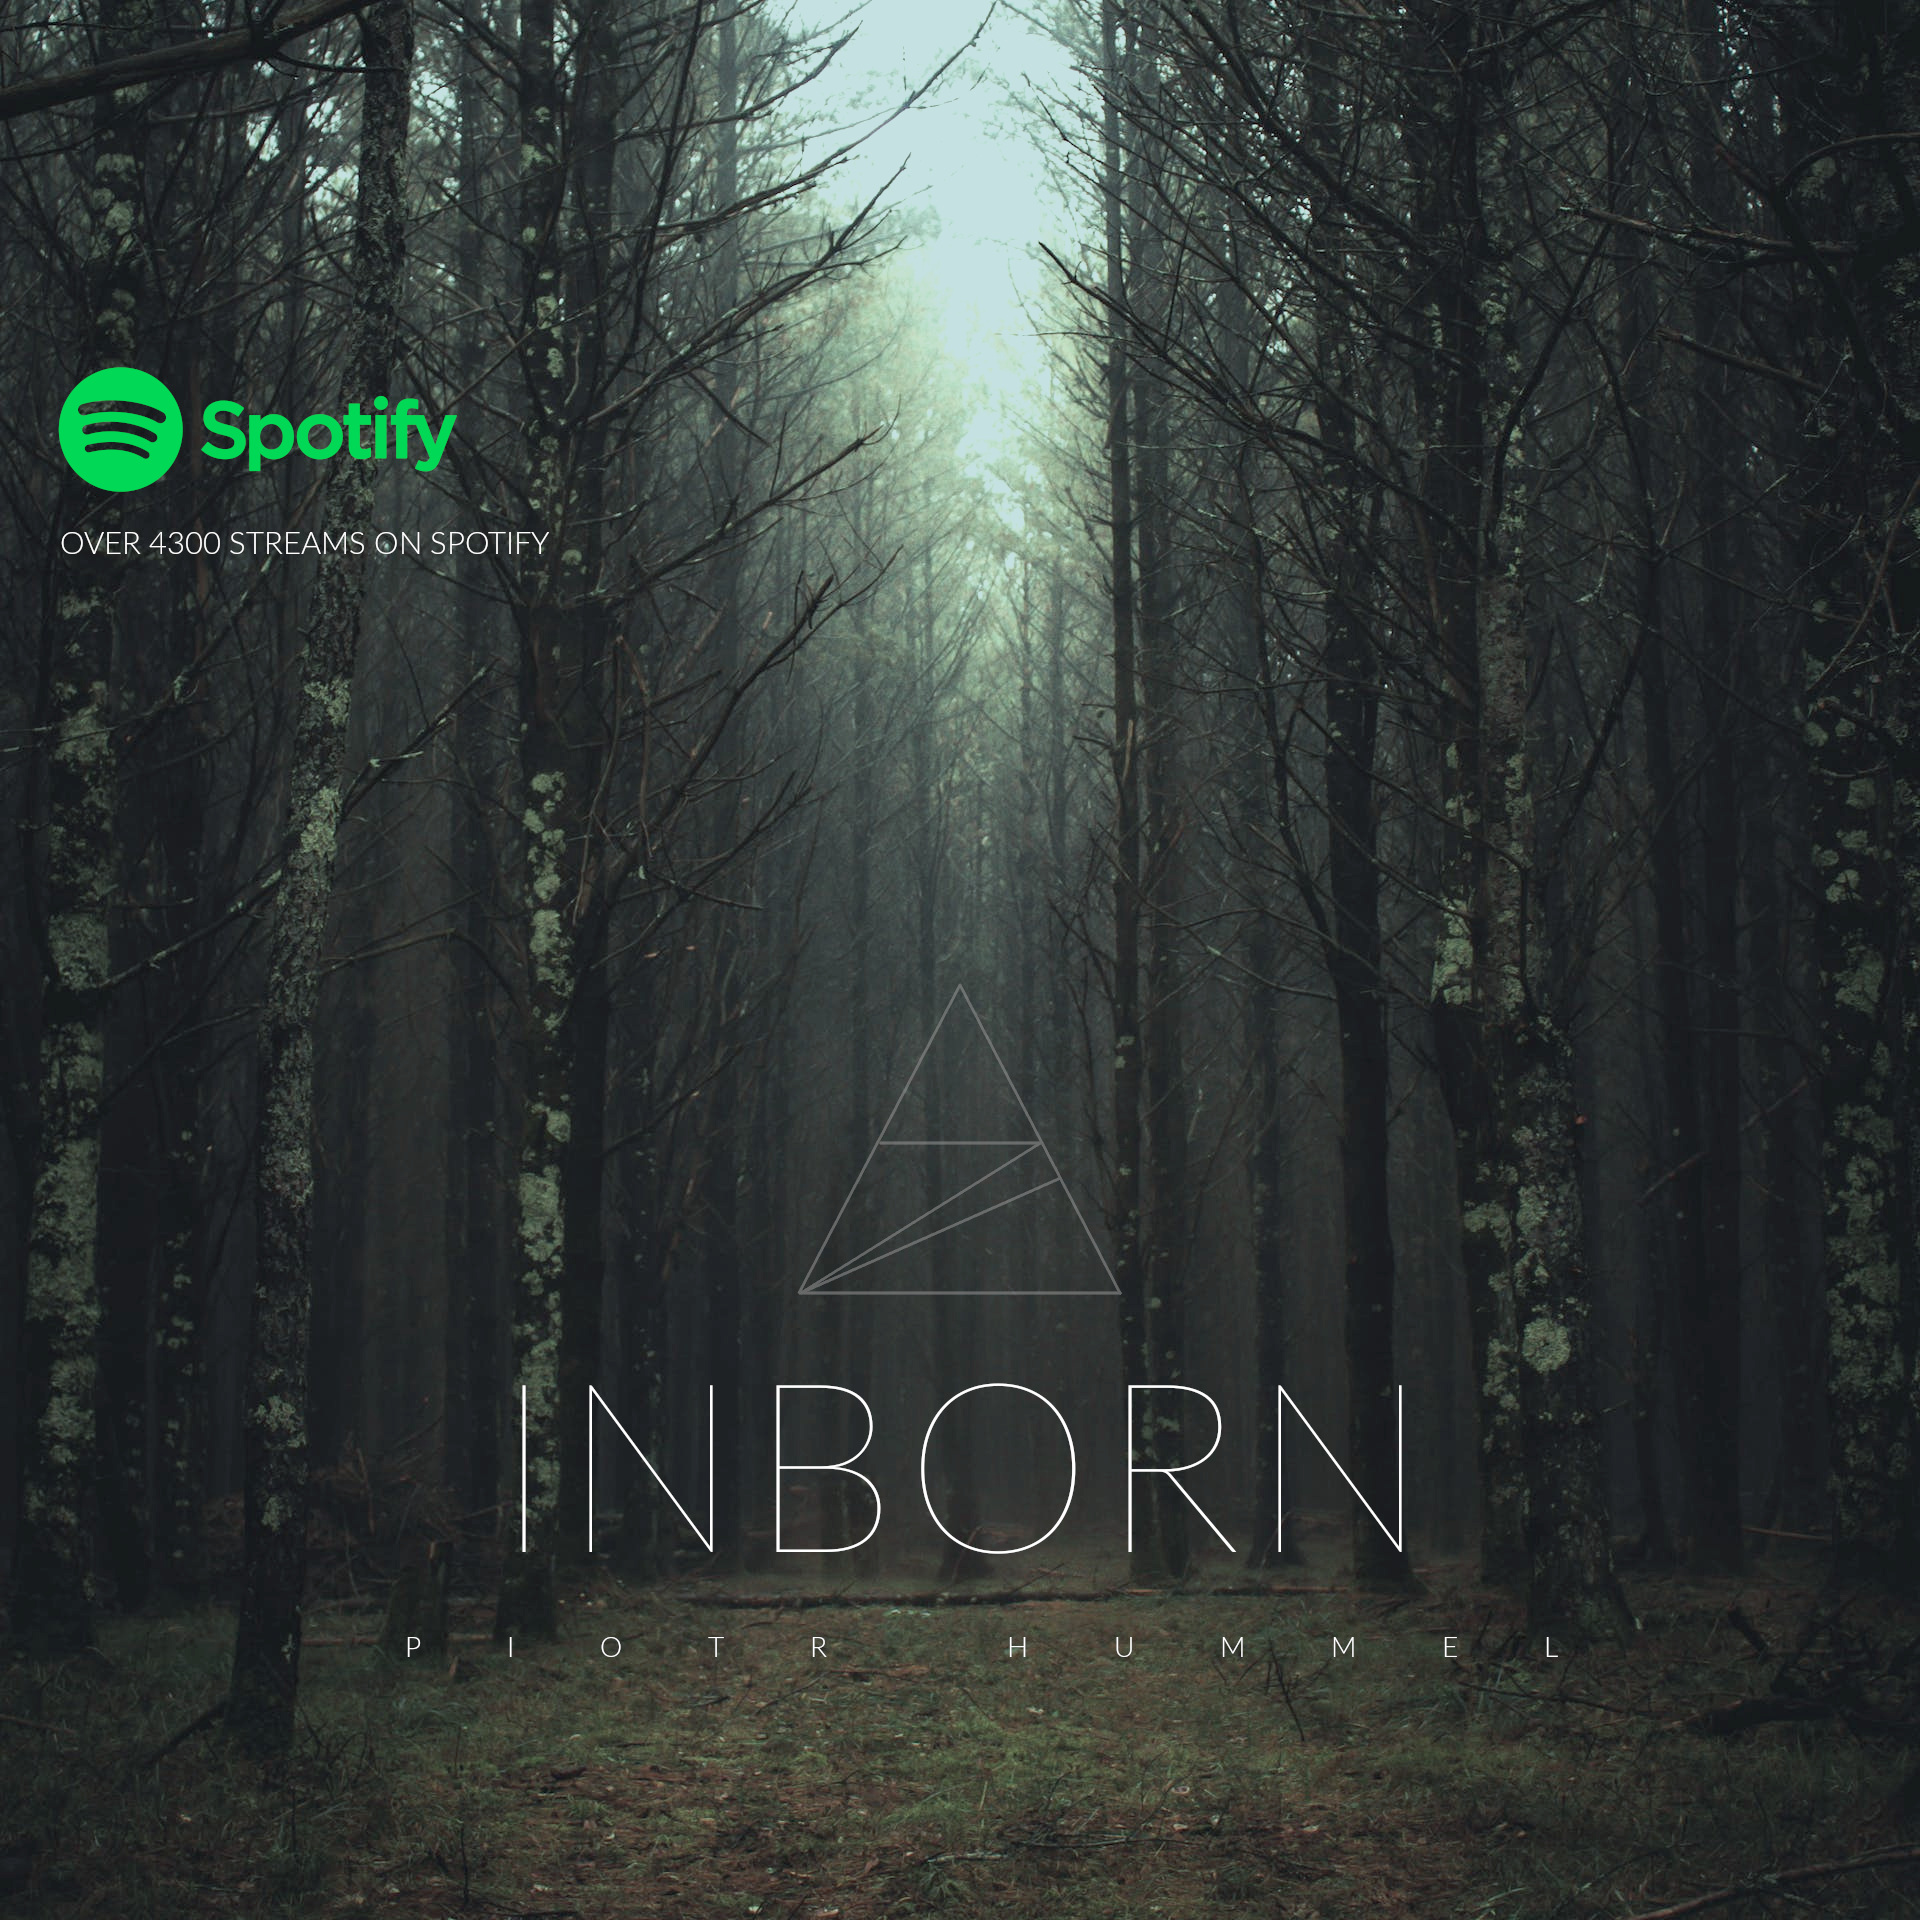 Inborn w Spotify!